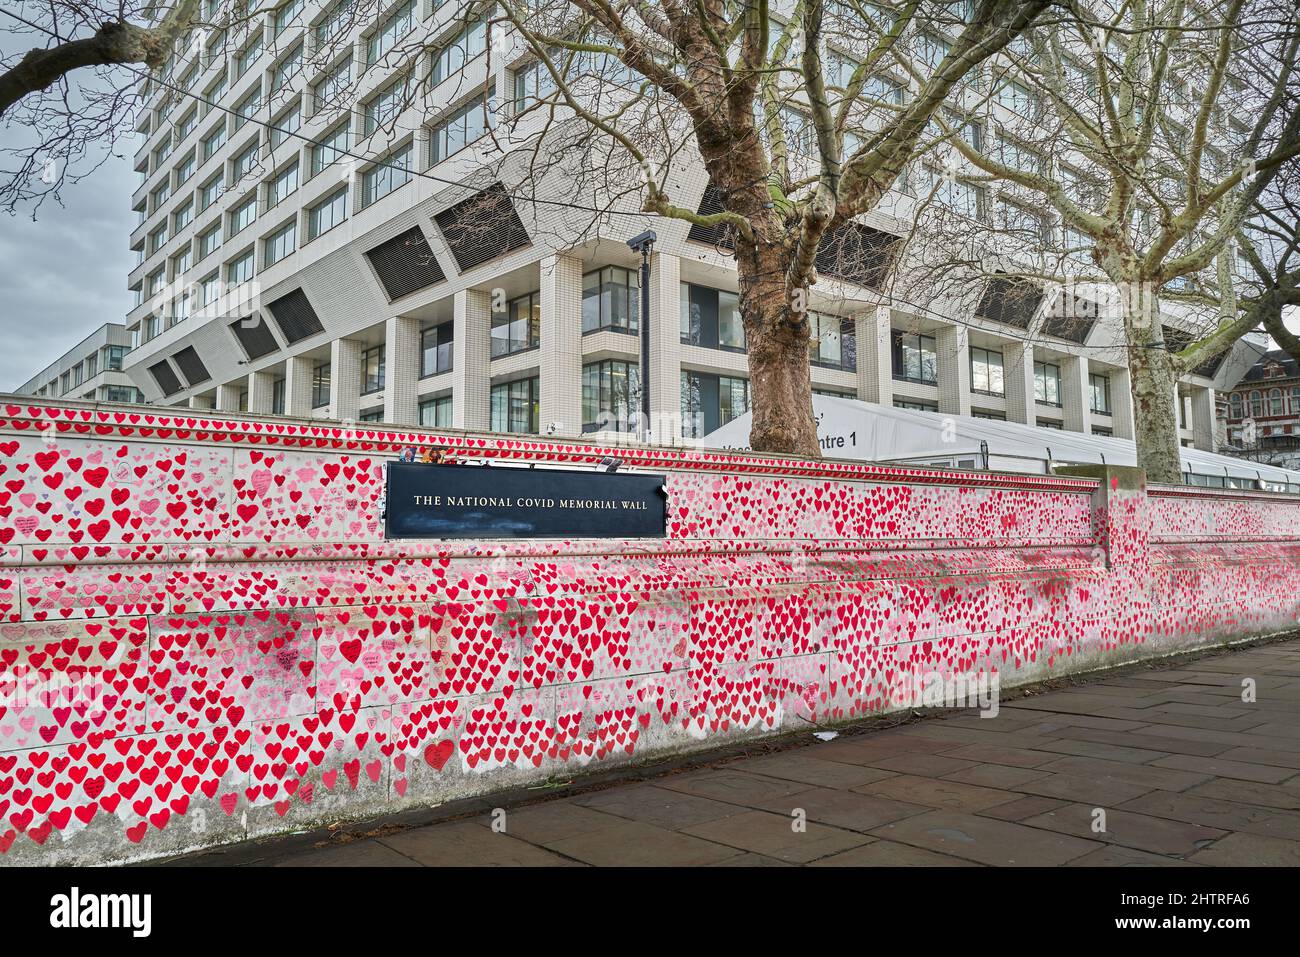 Le mur commémoratif national Covid devant l'hôpital St Thomas NHS, sur la rive de la Tamise, Londres, Angleterre. Banque D'Images